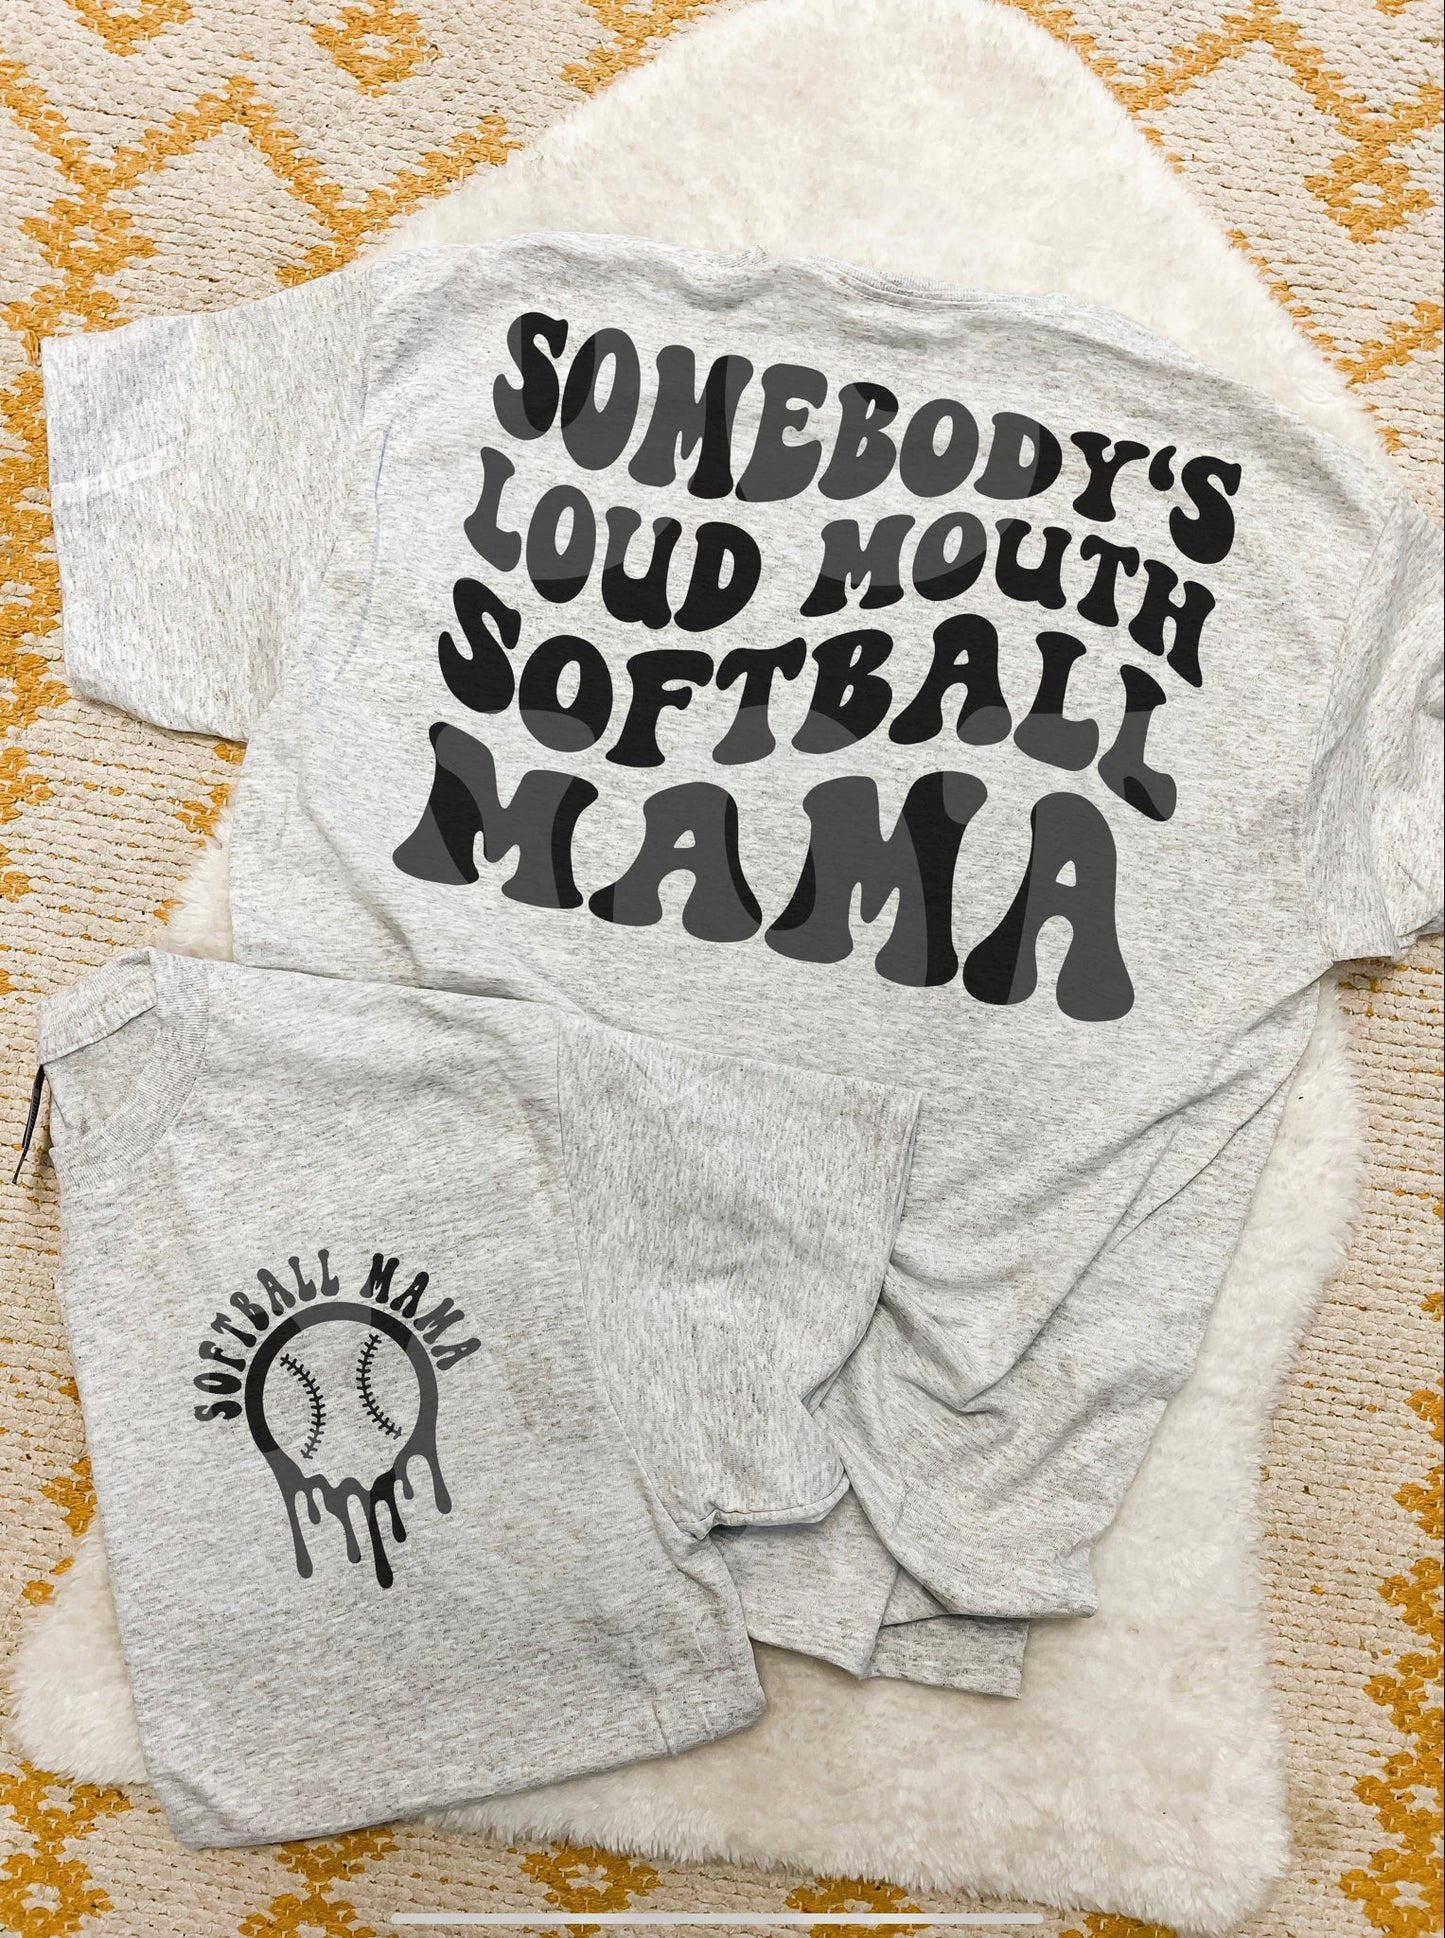 Loud Mouth Softball Mama